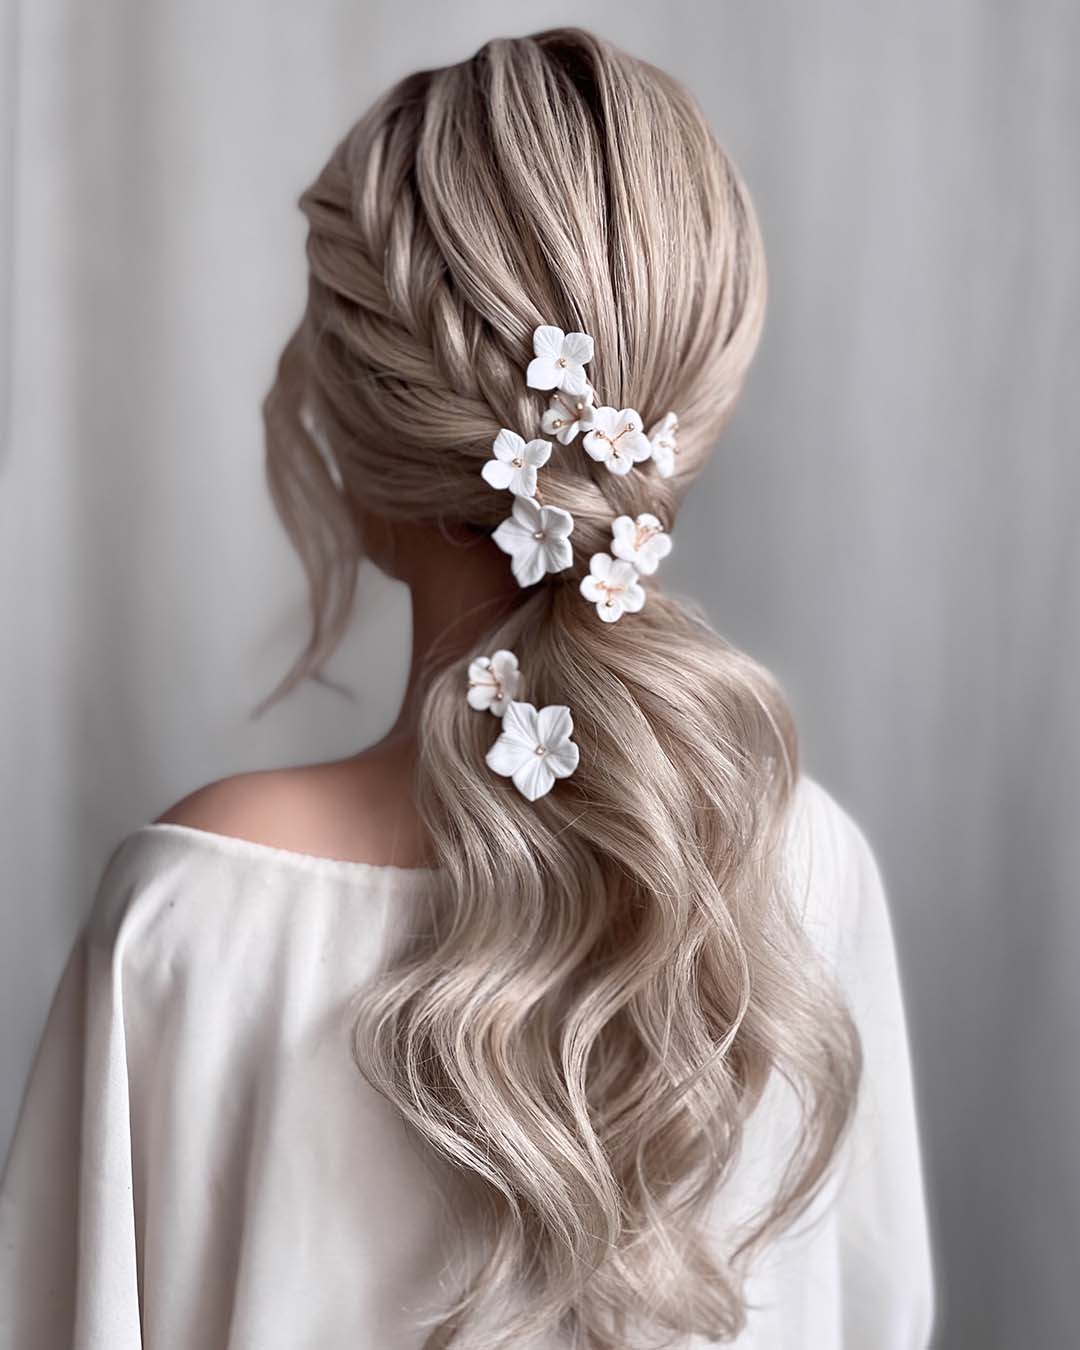 pony-tail-hairstyles-wedding-wavy-low-with-side-braid-white-flower-pins-kasia_fortuna